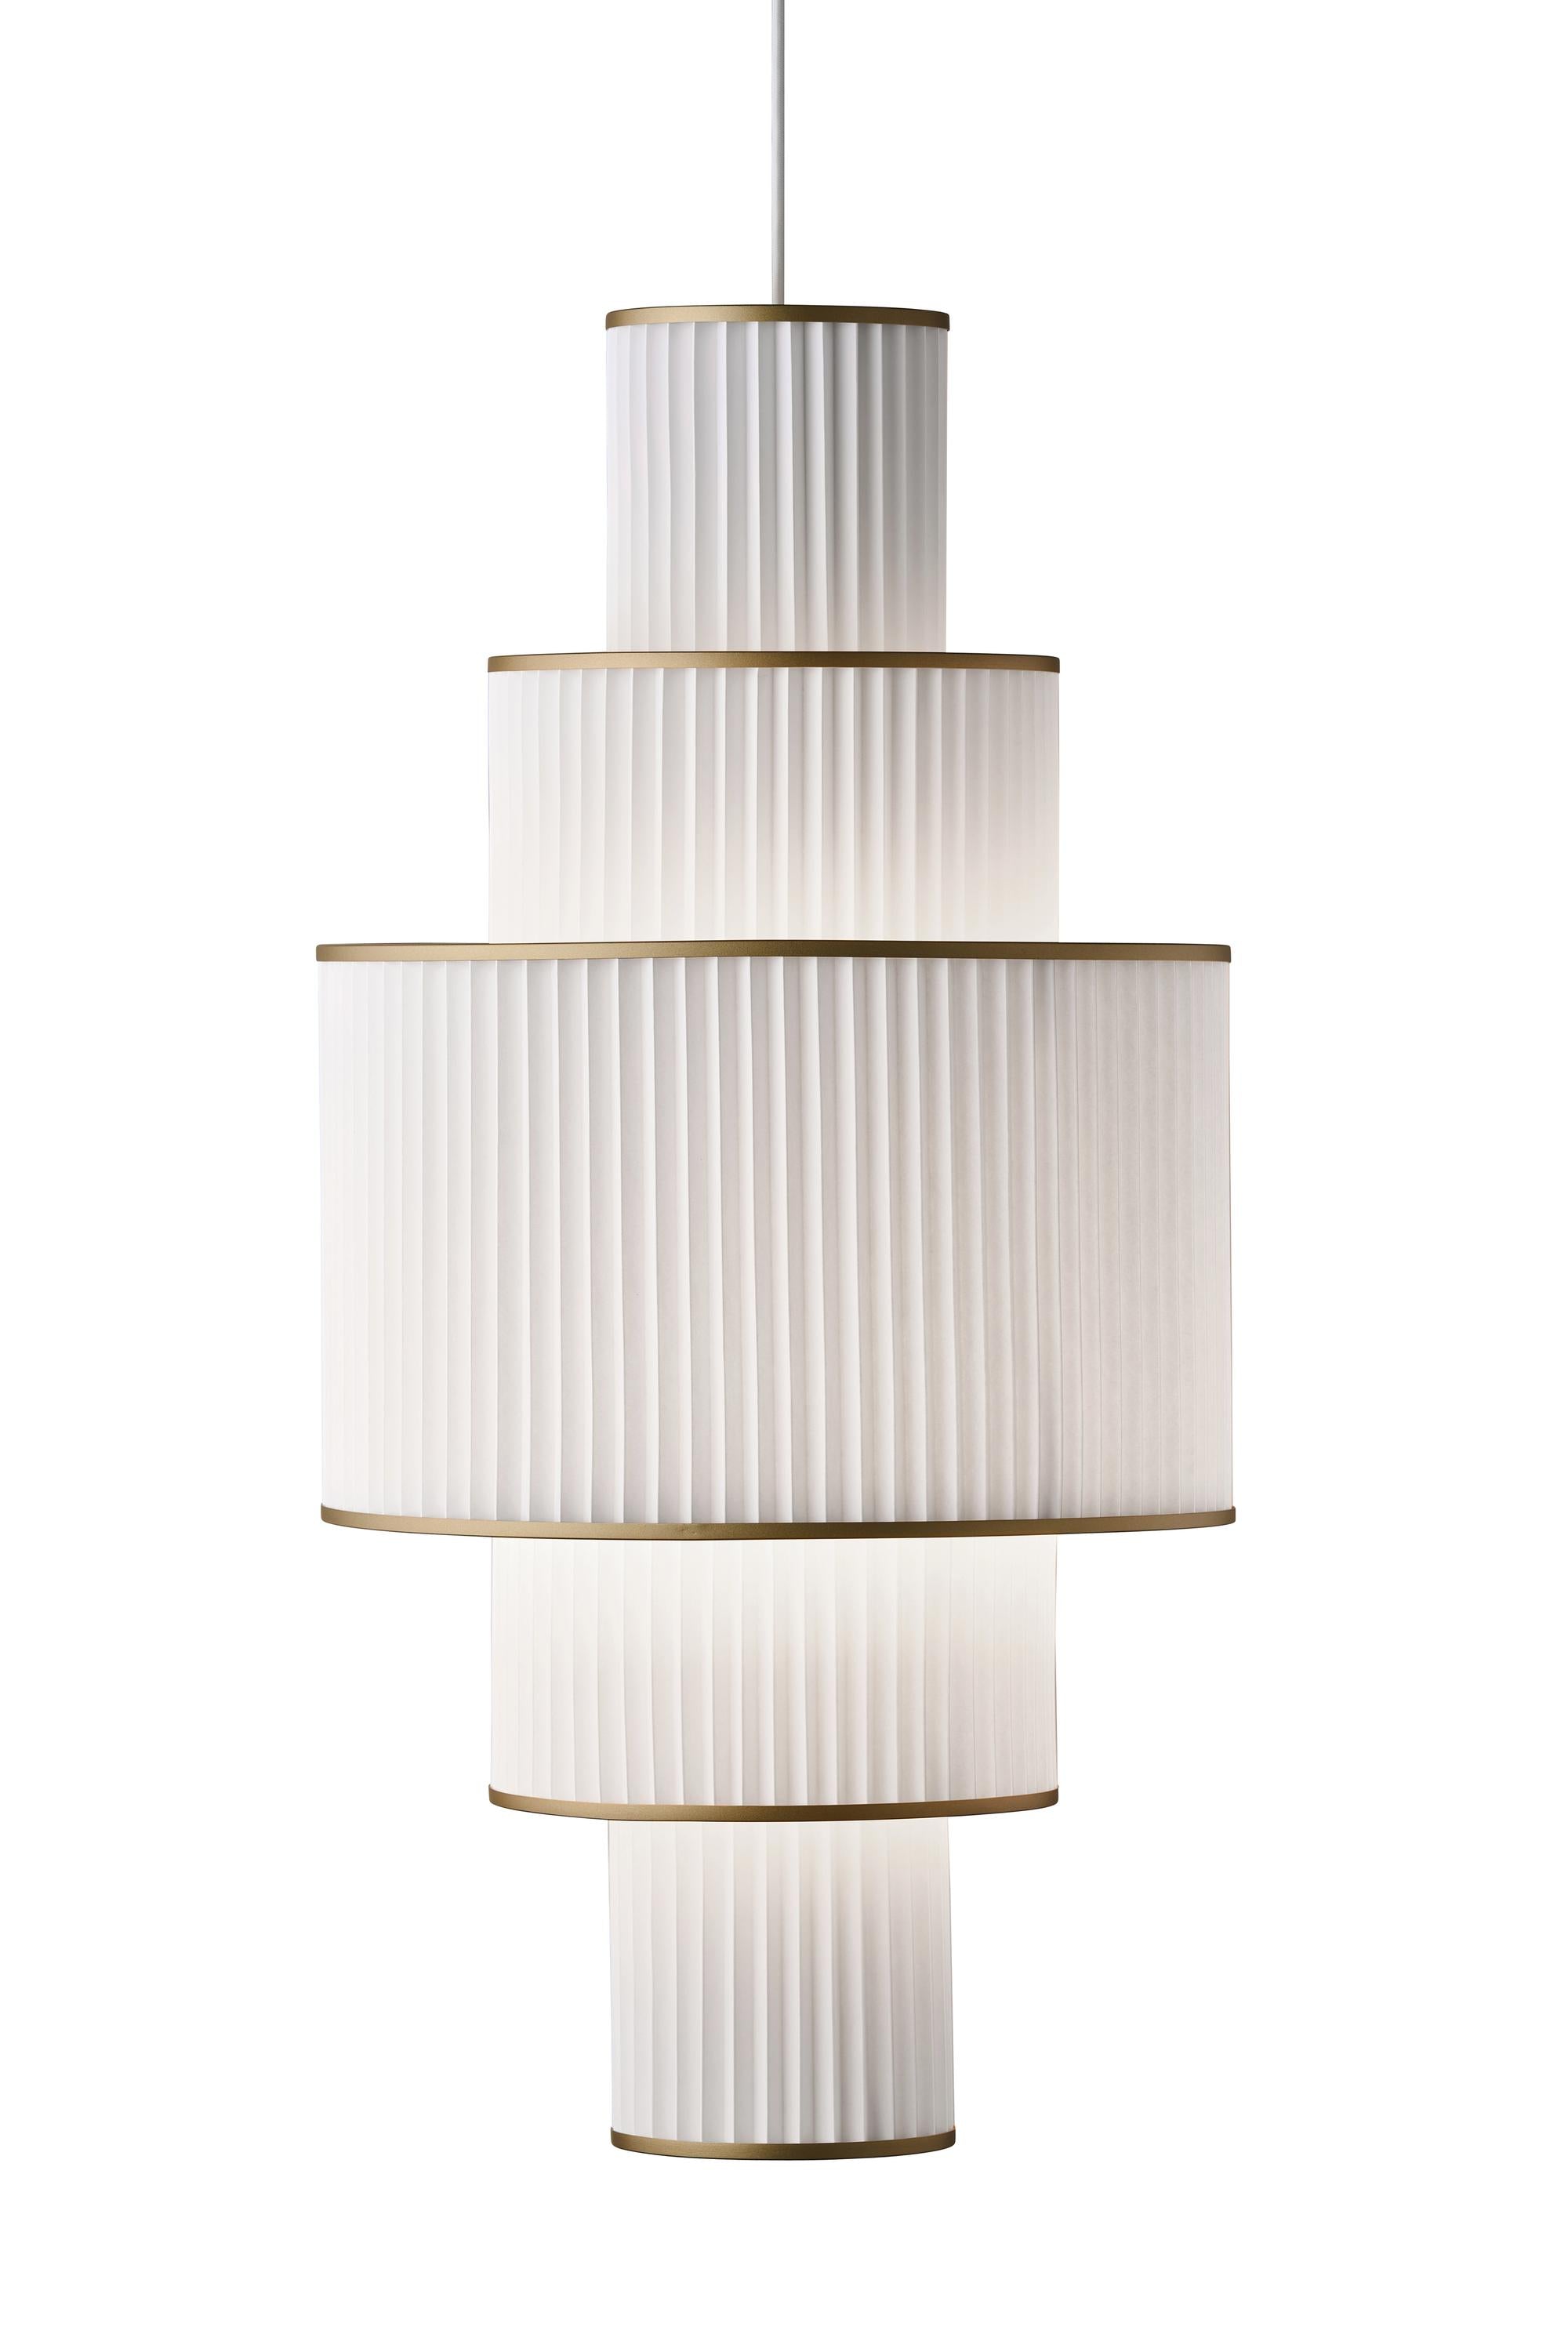 Le Klint Plivello Suspension Lamp Golden/White med 5 nuancer (S M L M S)